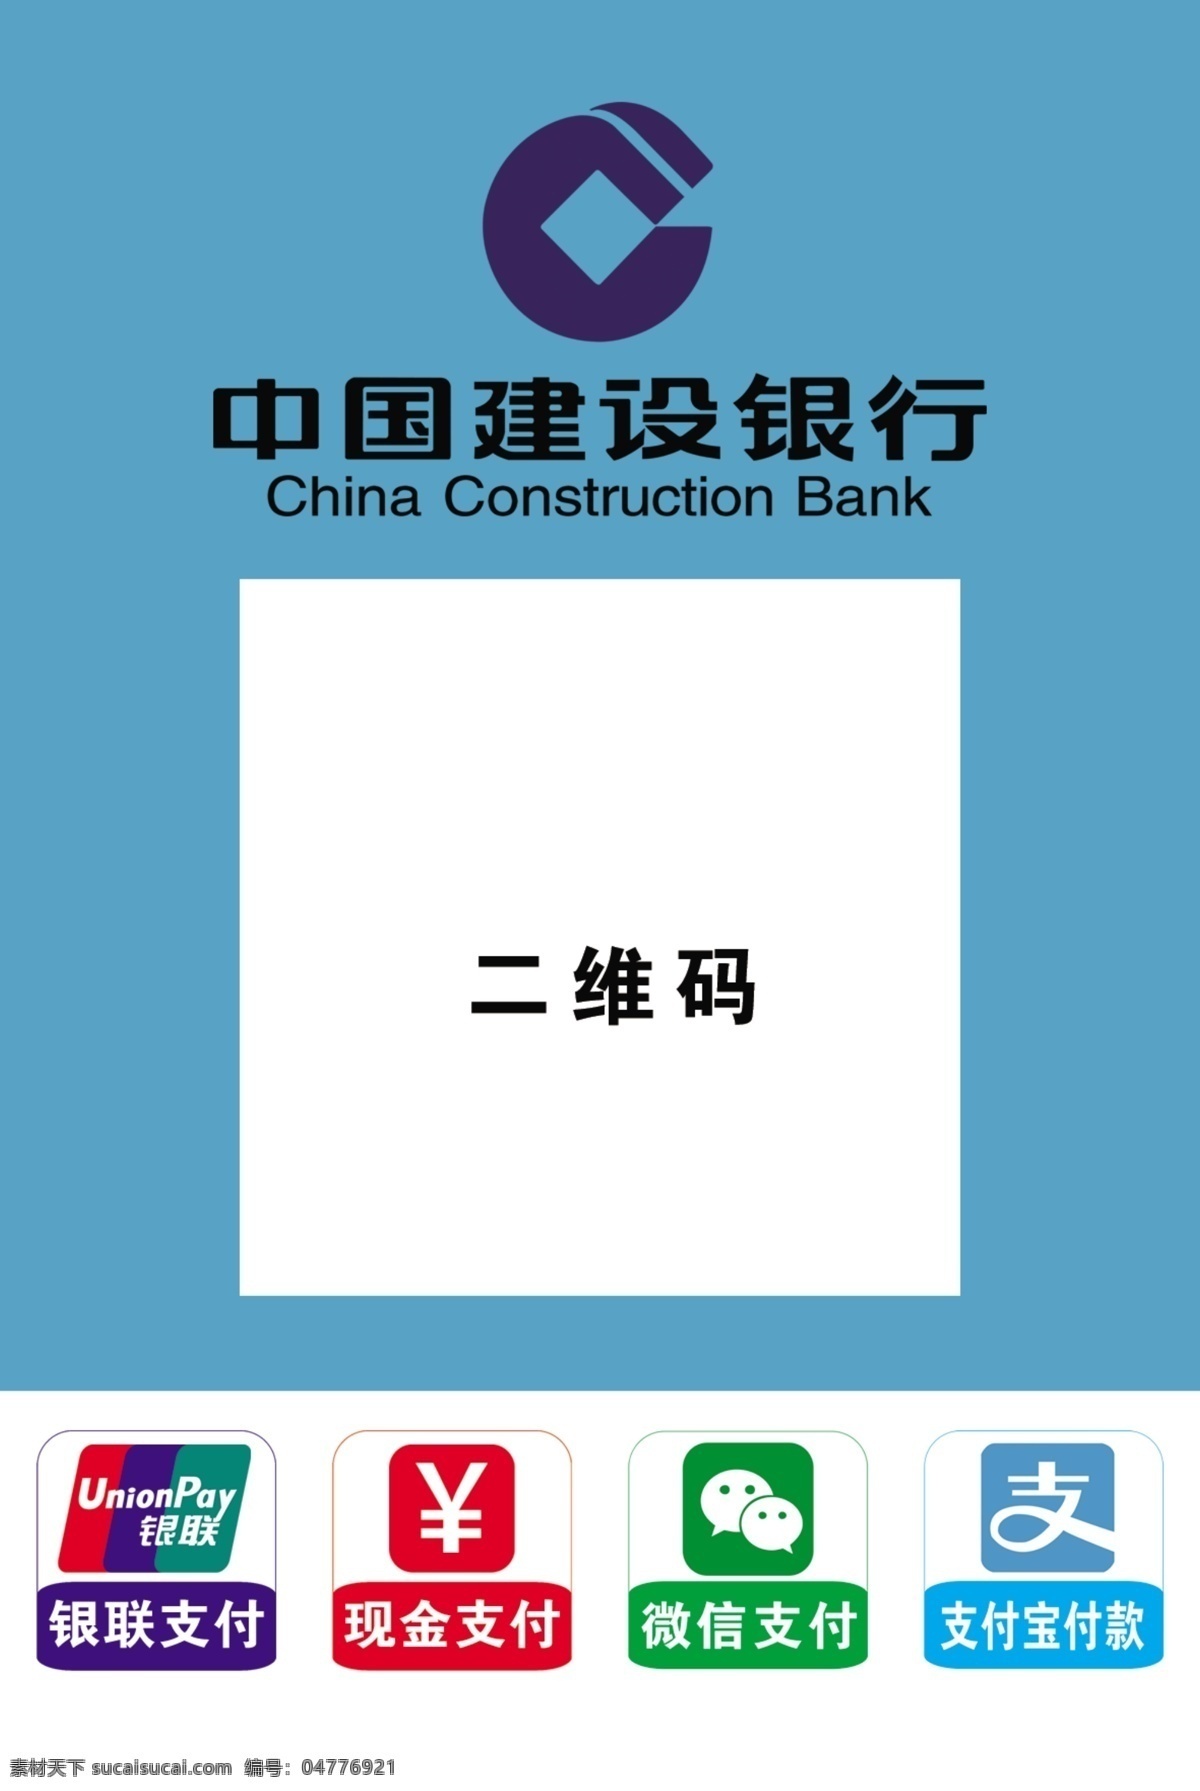 中国建设银行 支付 中国建设 银行支付 支付方式 支付码 银行